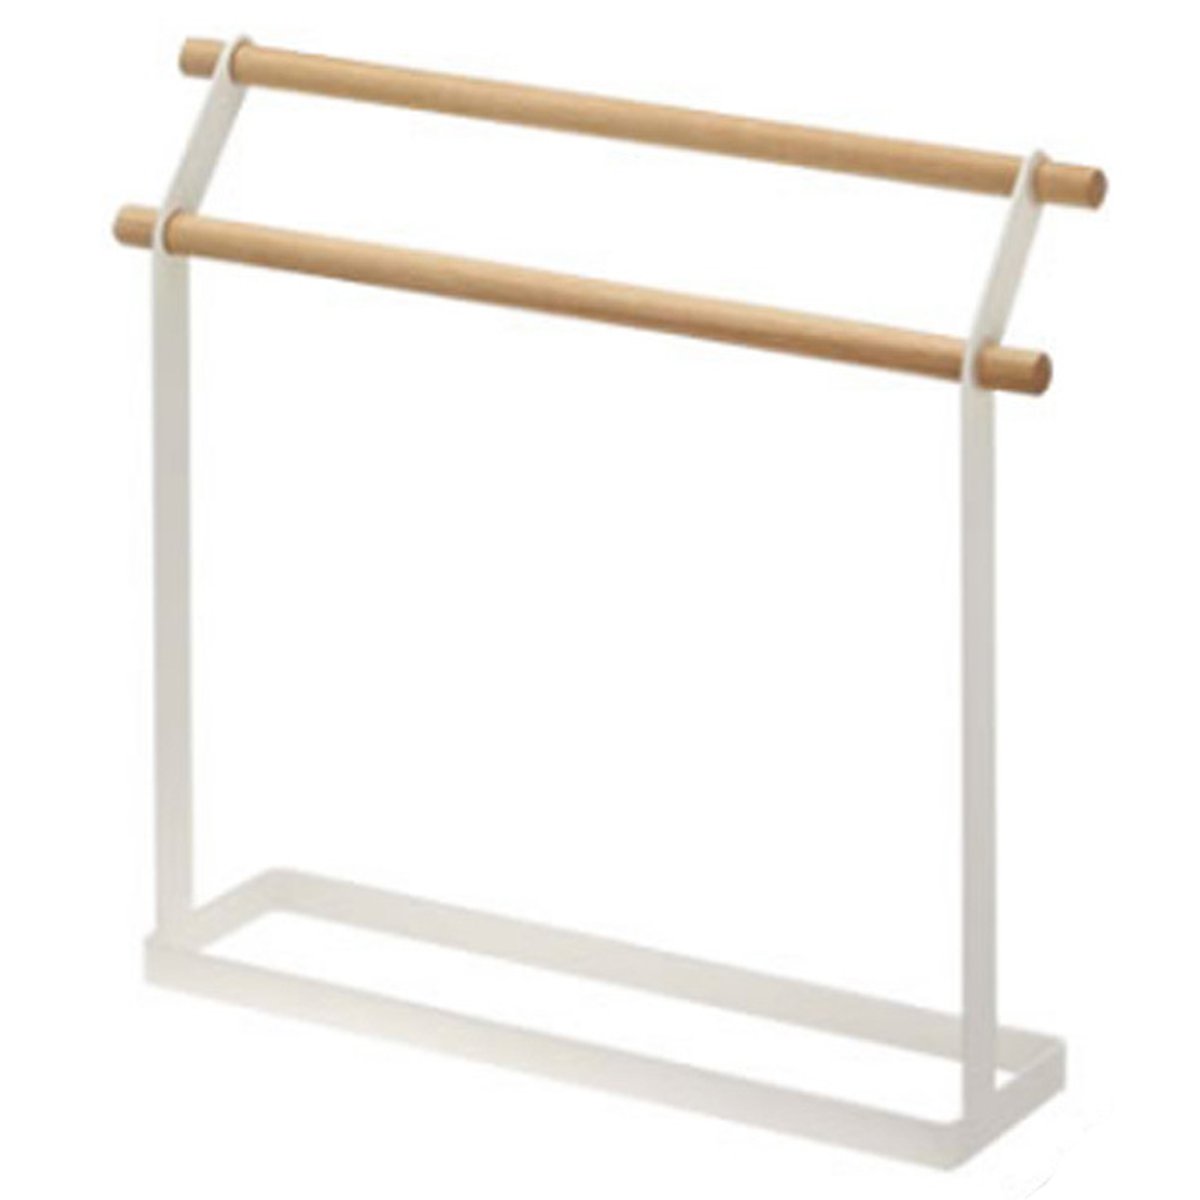 2-Tier-Iron-Towel-Holder-Storage-Organizer-Drying-Rack-Hanger-Kitchen-Bathroom-1629710